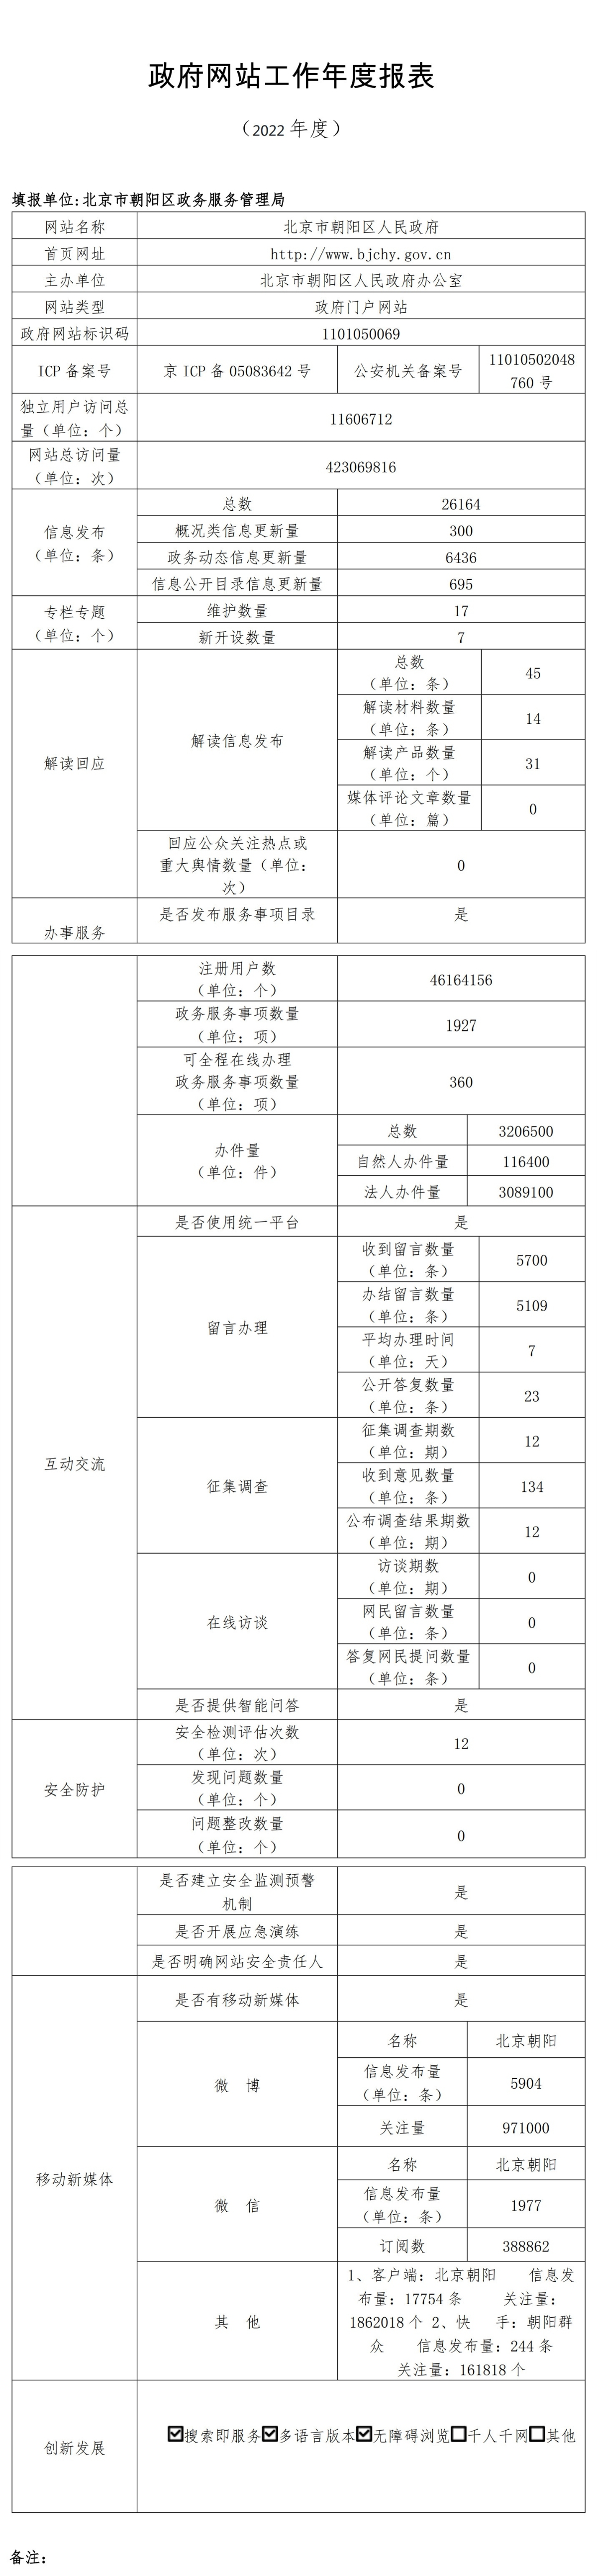 北京市朝陽區人民政府2022年政府網站年度工作報表